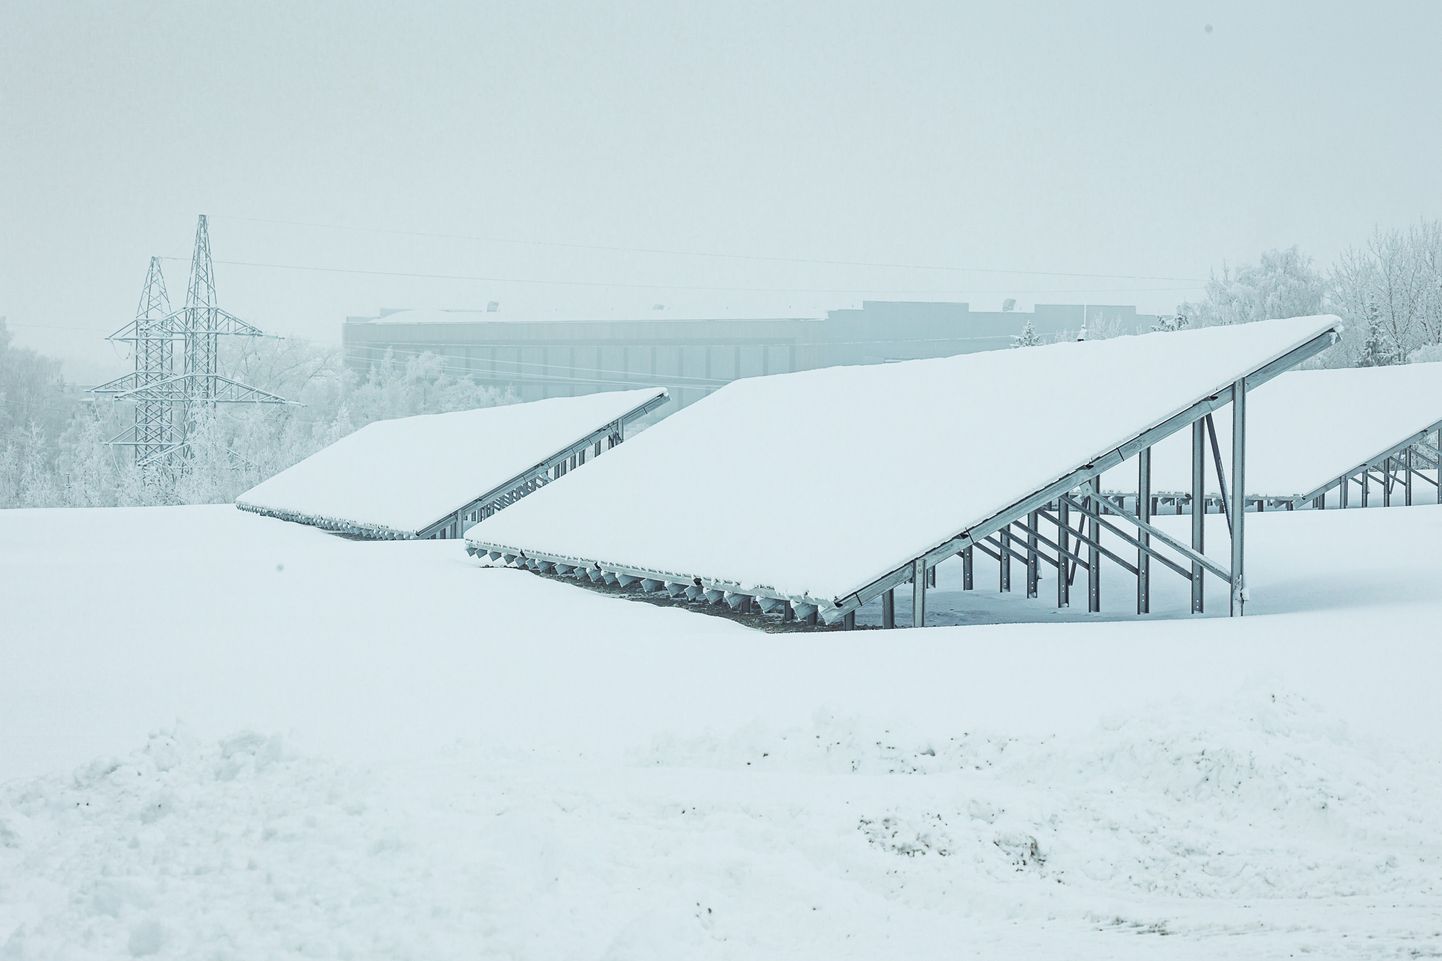 Расположенные на известняковом плато шахты "Estonia" солнечные панели в день открытия парка были покрыты снегом, однако в теплое и безоблачное время они в состоянии производить столько электроэнергии, чтобы обеспечить работу вентиляционного оборудования и водяных насосов шахты.